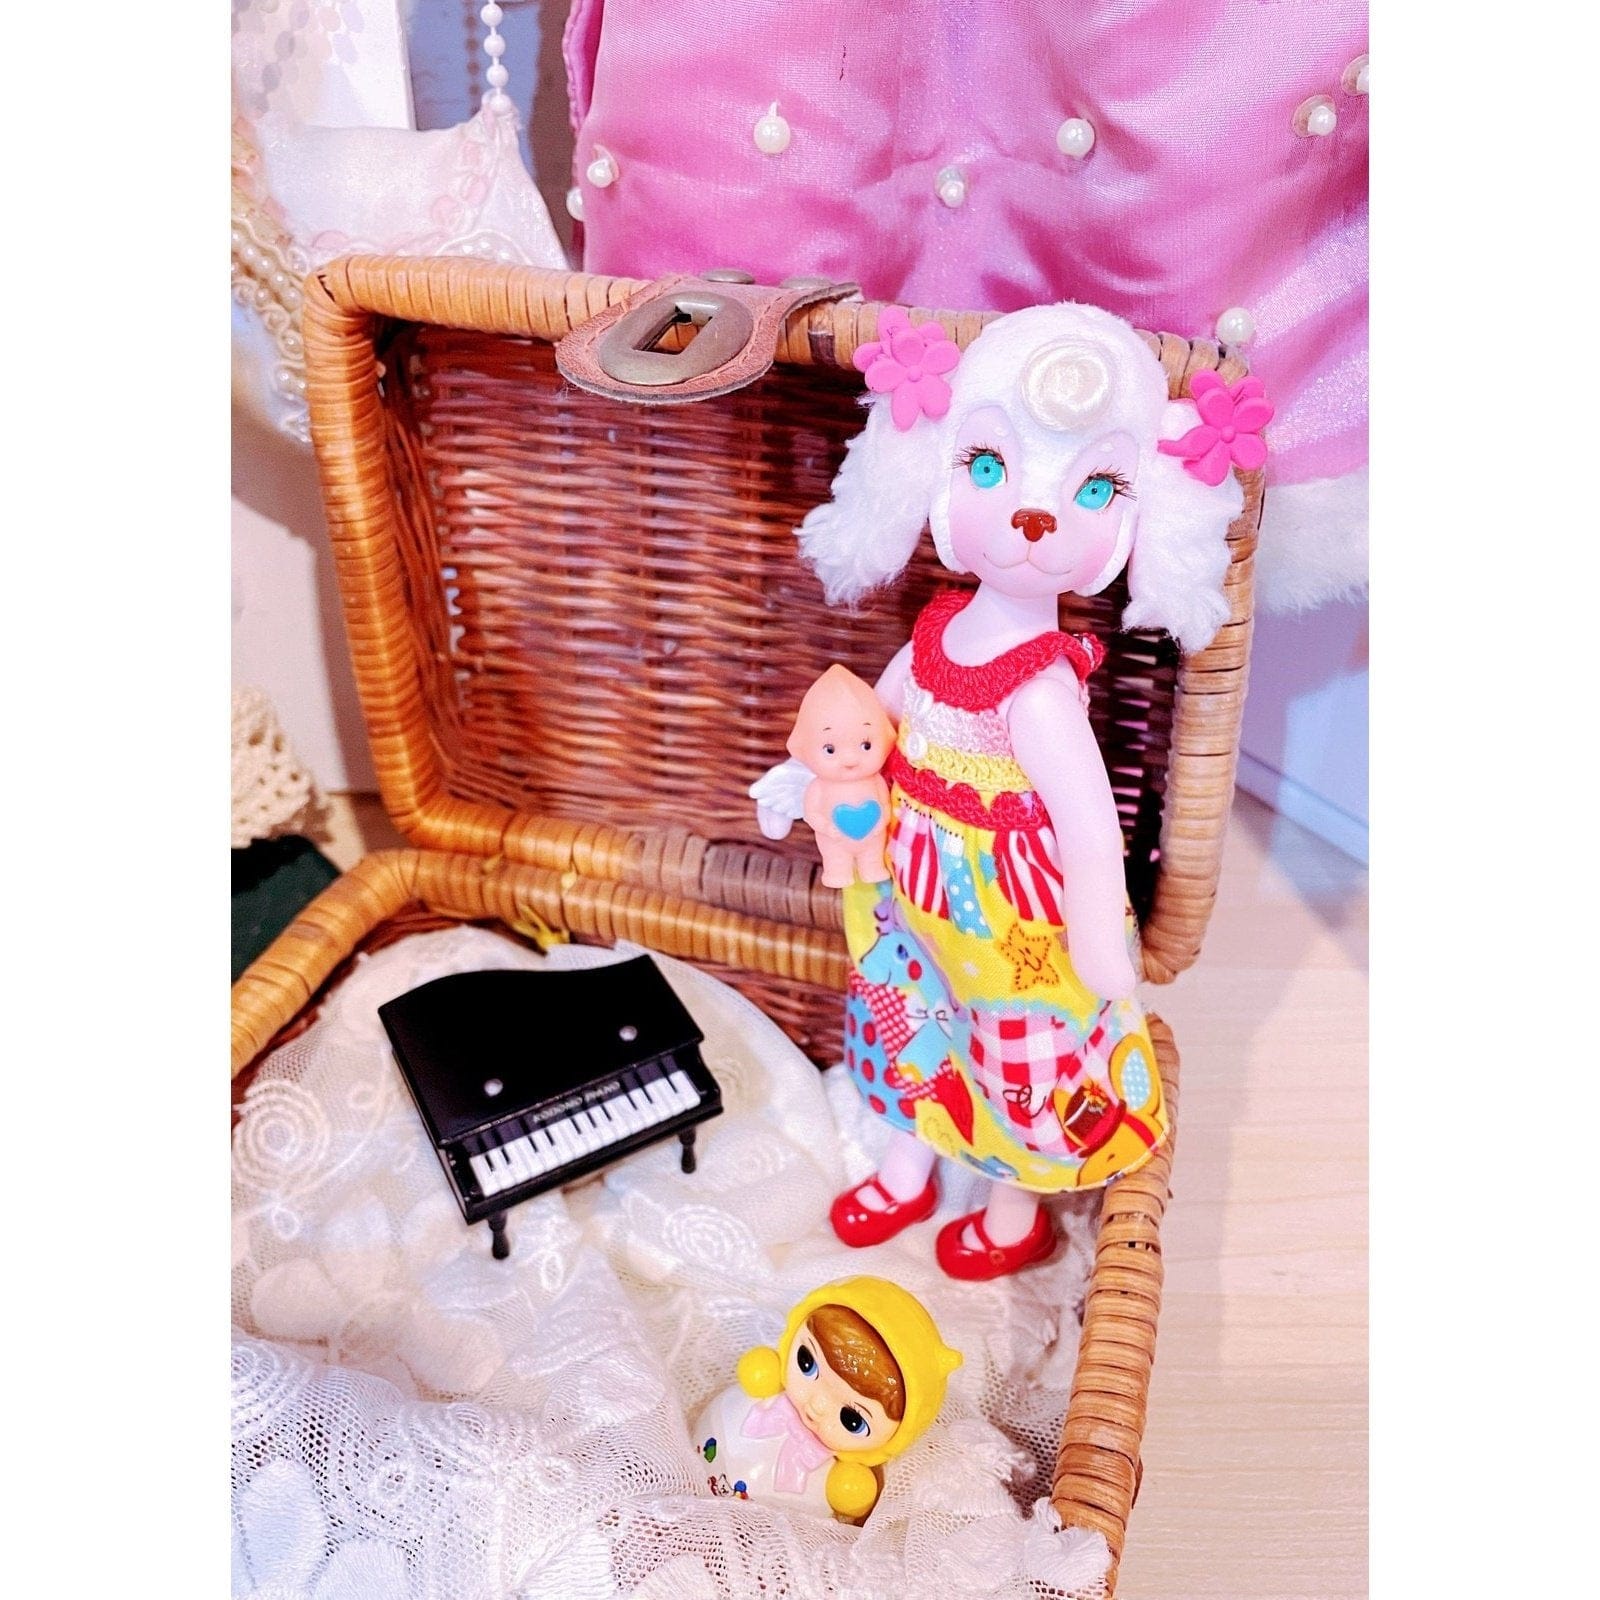 【Yummy Toy Box】膠皮貴賓狗 Nana 兩色 現貨 霍夫曼的玩具箱 台灣娃展限定